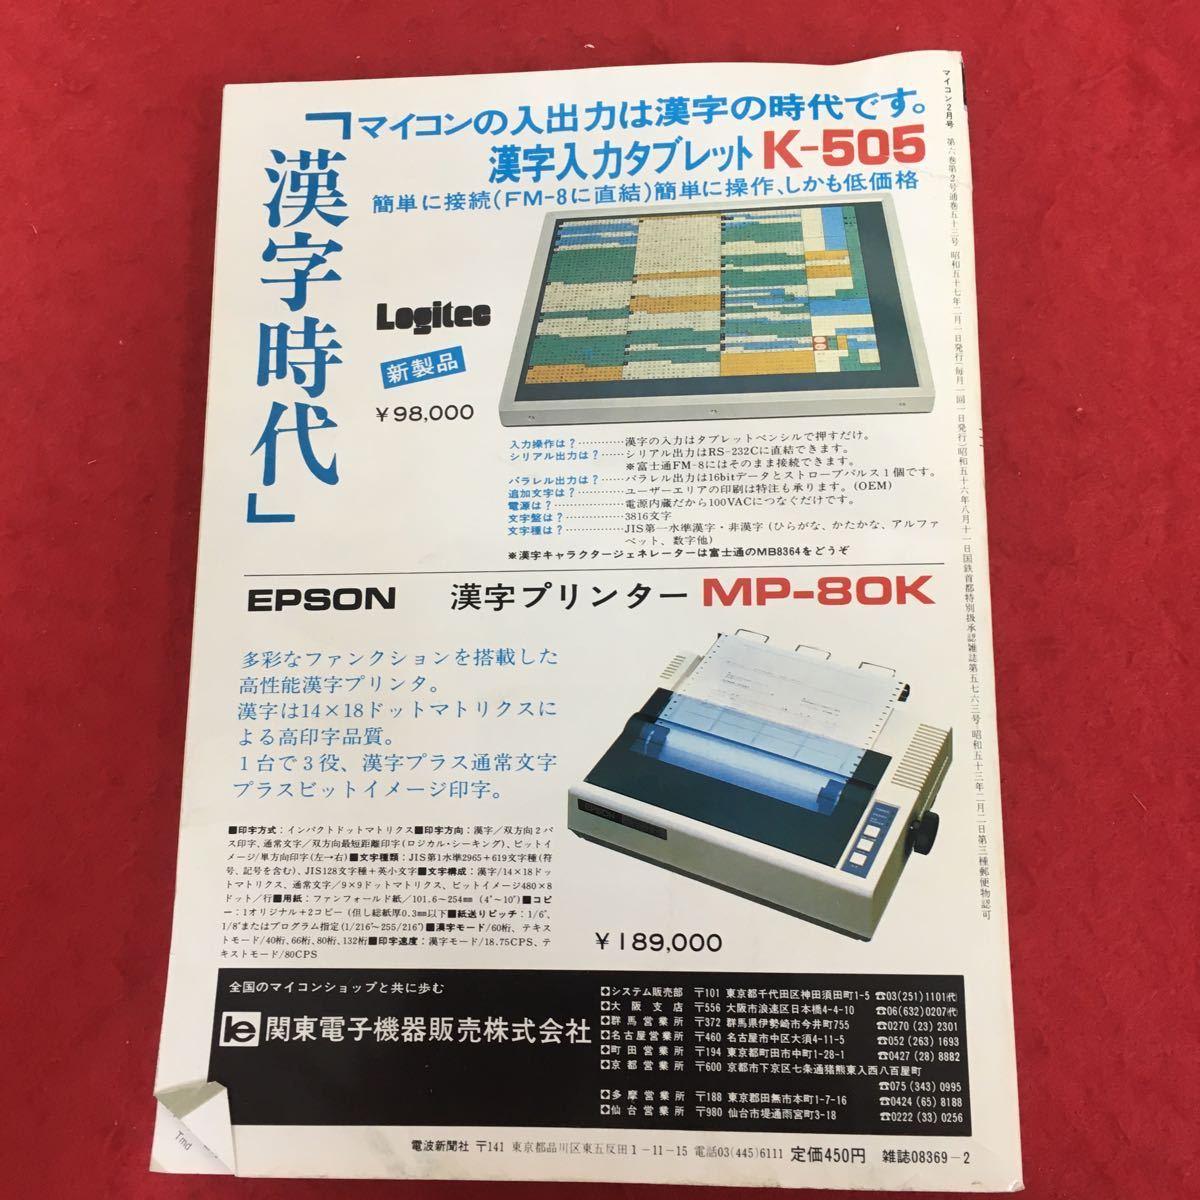 g-036 マイコン 1982年2月号 電波新聞社 特集:各社最新パソコンの性能を探る シャープMZ-80B 富士通MICRO-8 松下 NEC ほか レトロPC ※4_折れあり